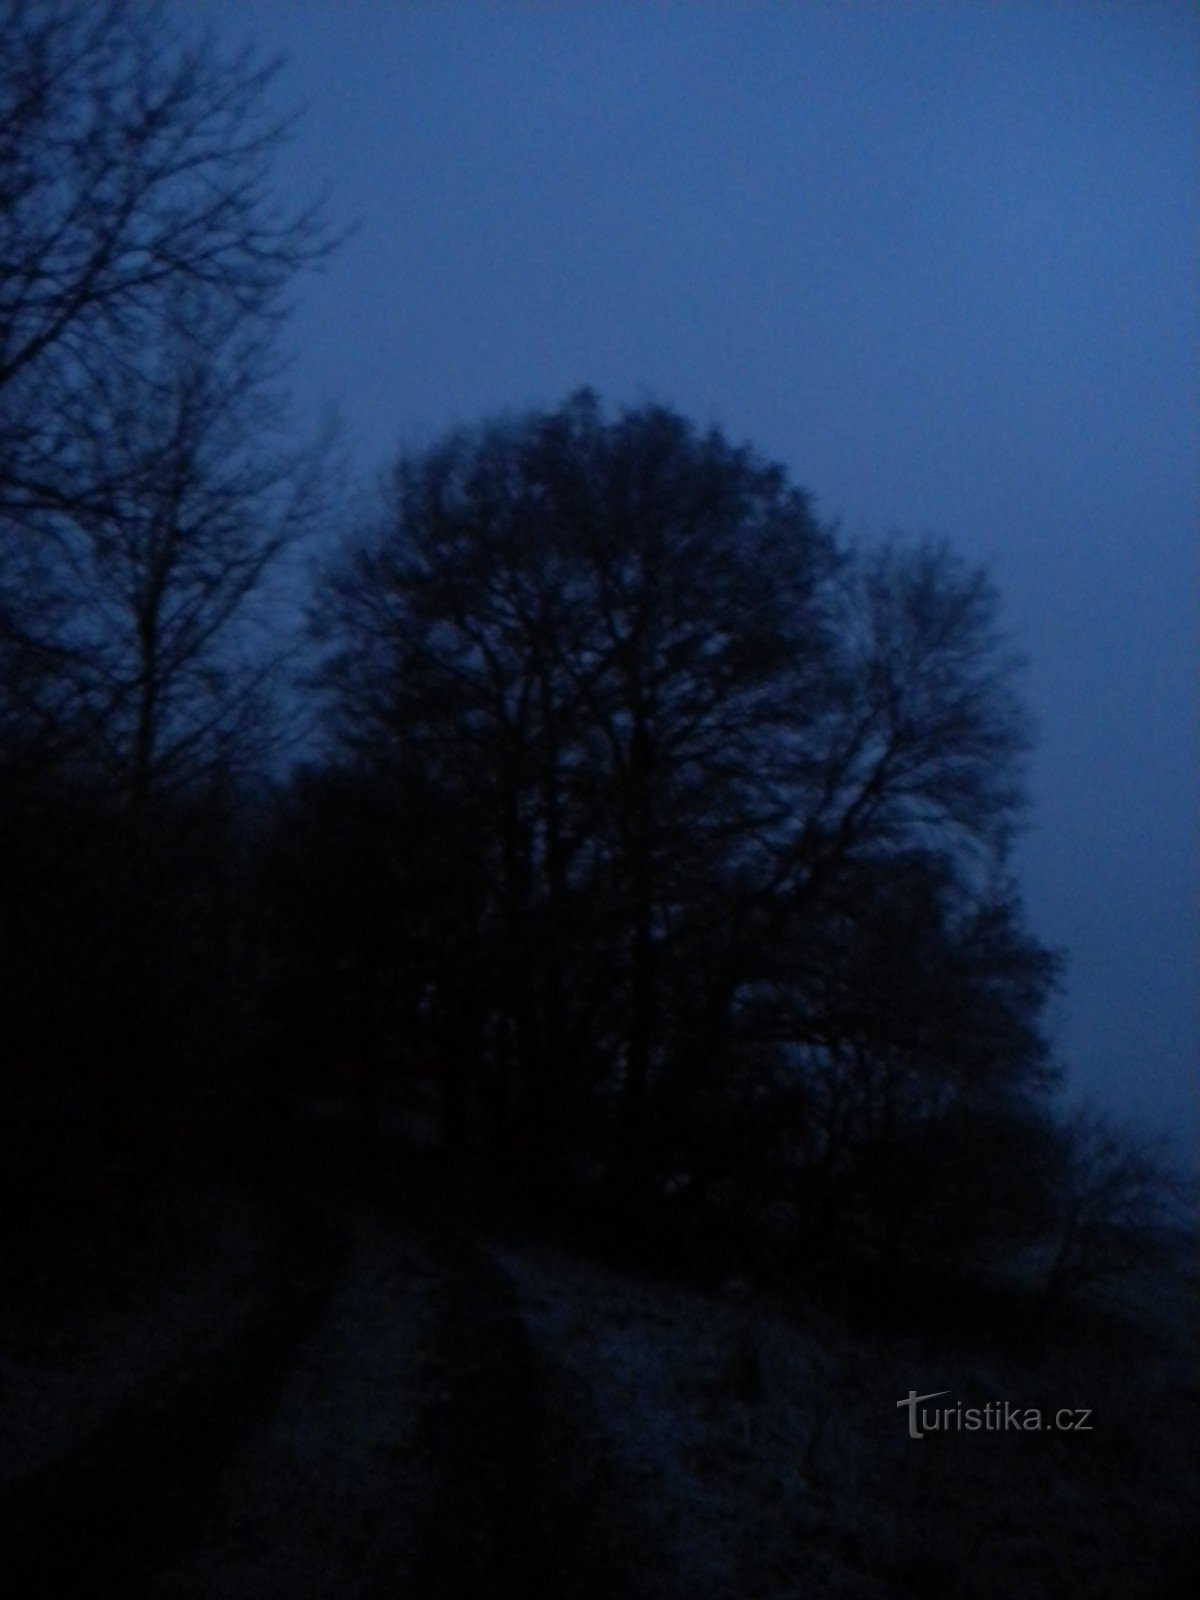 慢慢天亮了。 从 Paško Pole 到 Milešovka 的道路。